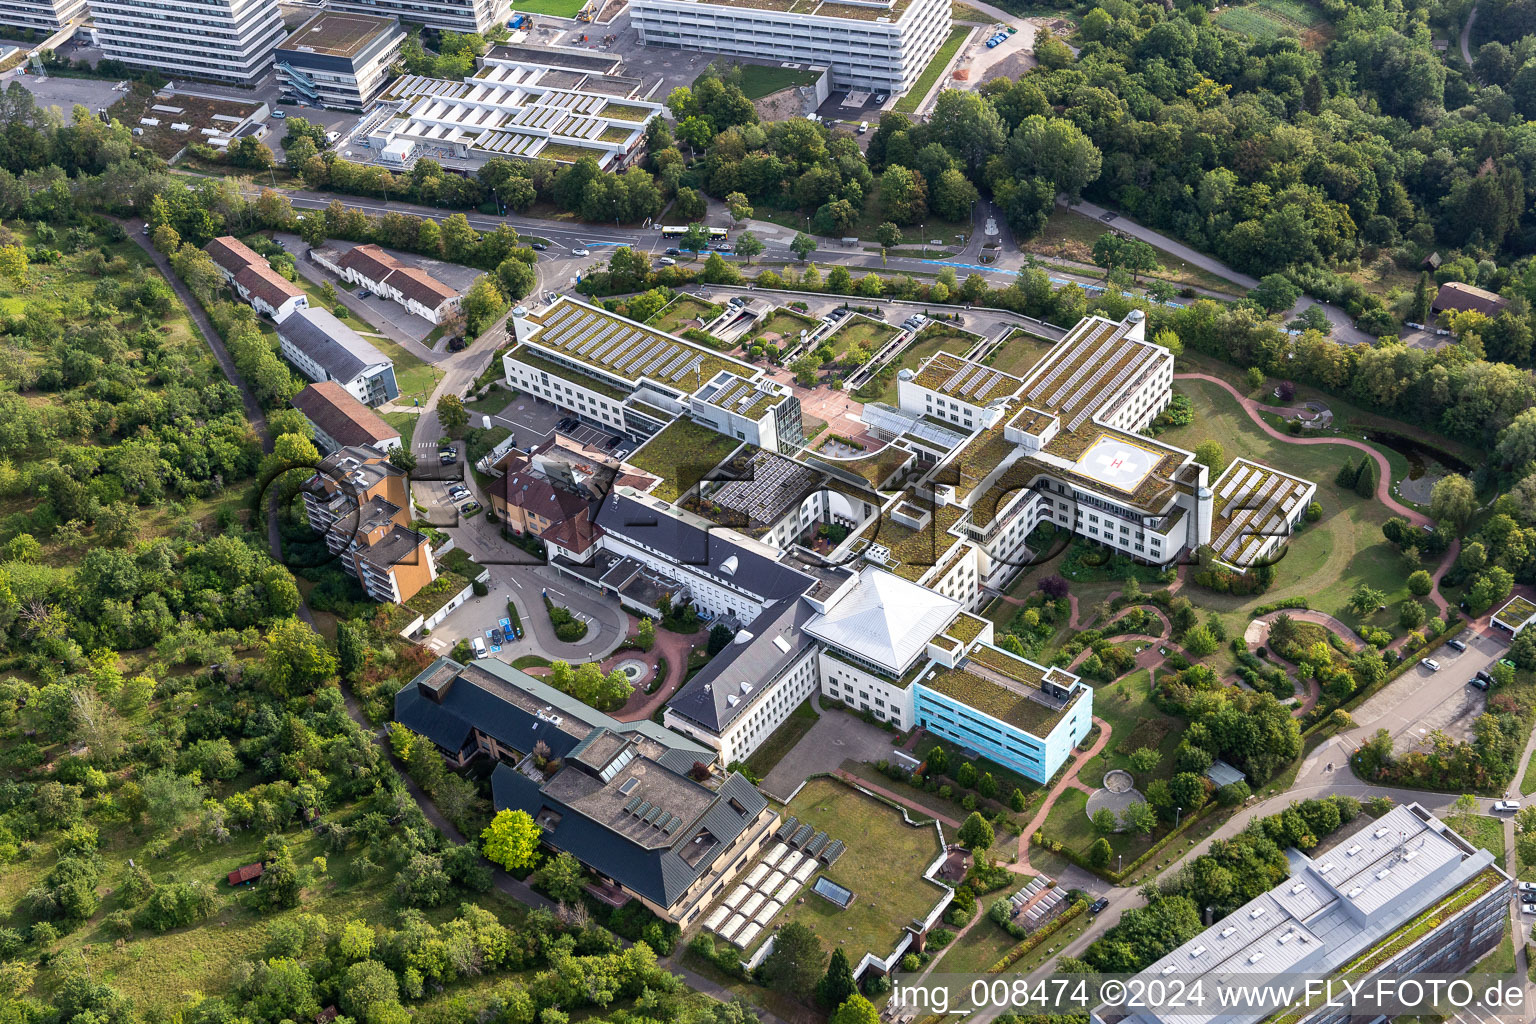 Hospital grounds of the Clinic " BG Klinik Tuebingen " in Tuebingen in the state Baden-Wuerttemberg, Germany